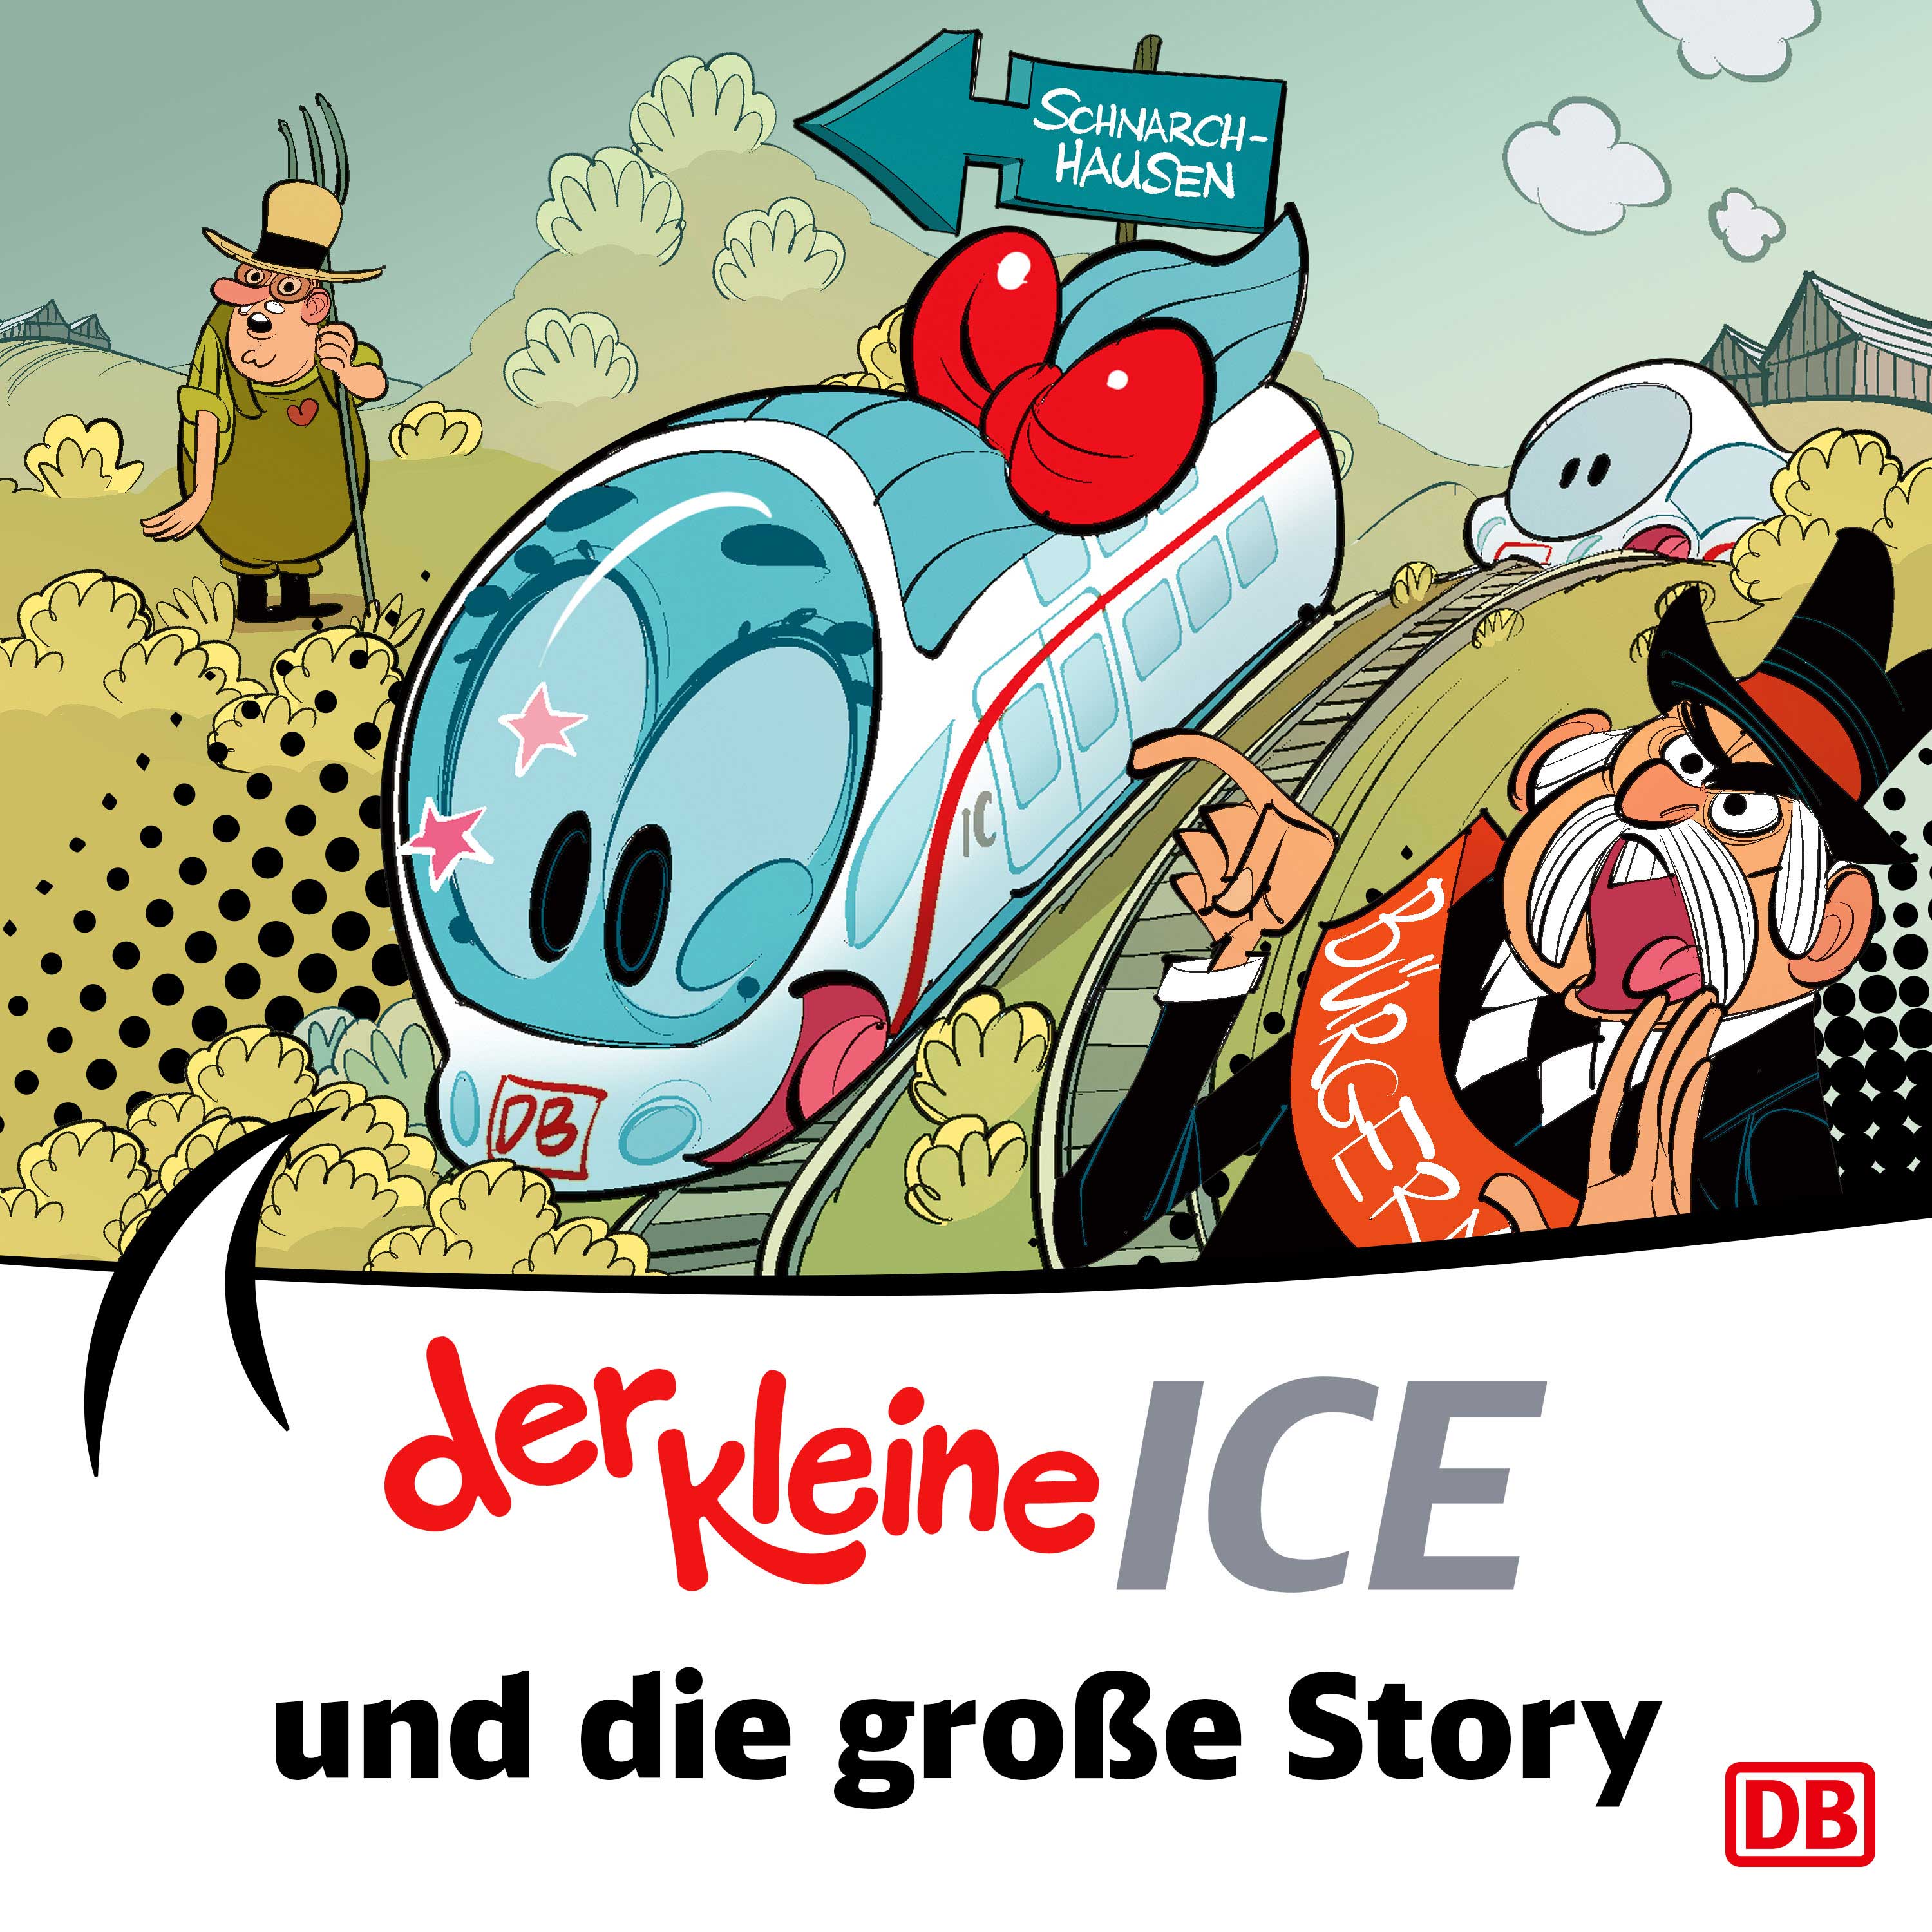 Der kleine ICE - Die große Story